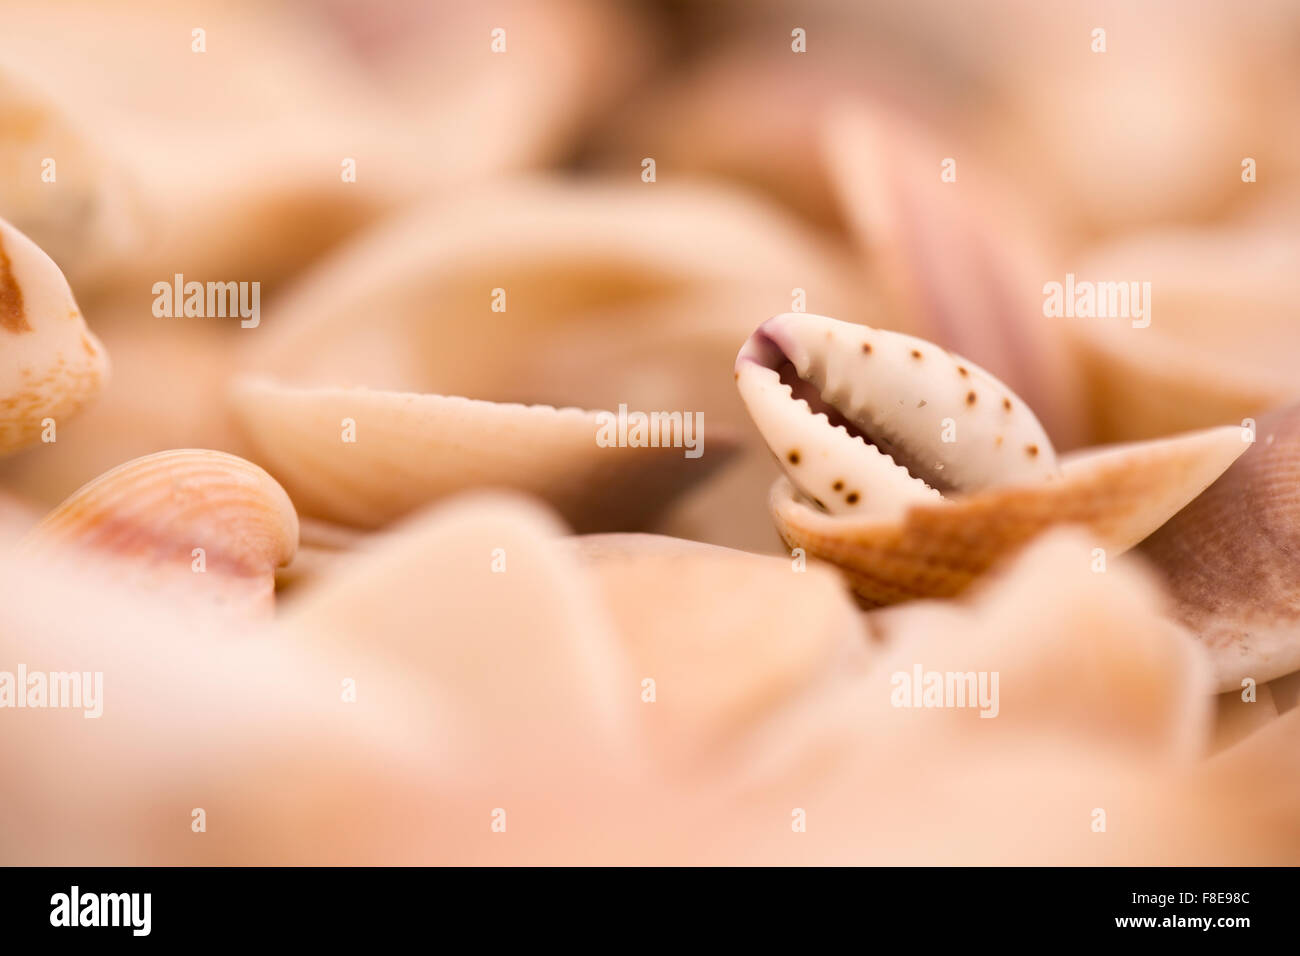 En forme de bouche d'un coquillage Lamellaria limace de mer sur la plage photographié sur la mer Méditerranée, Israël Banque D'Images